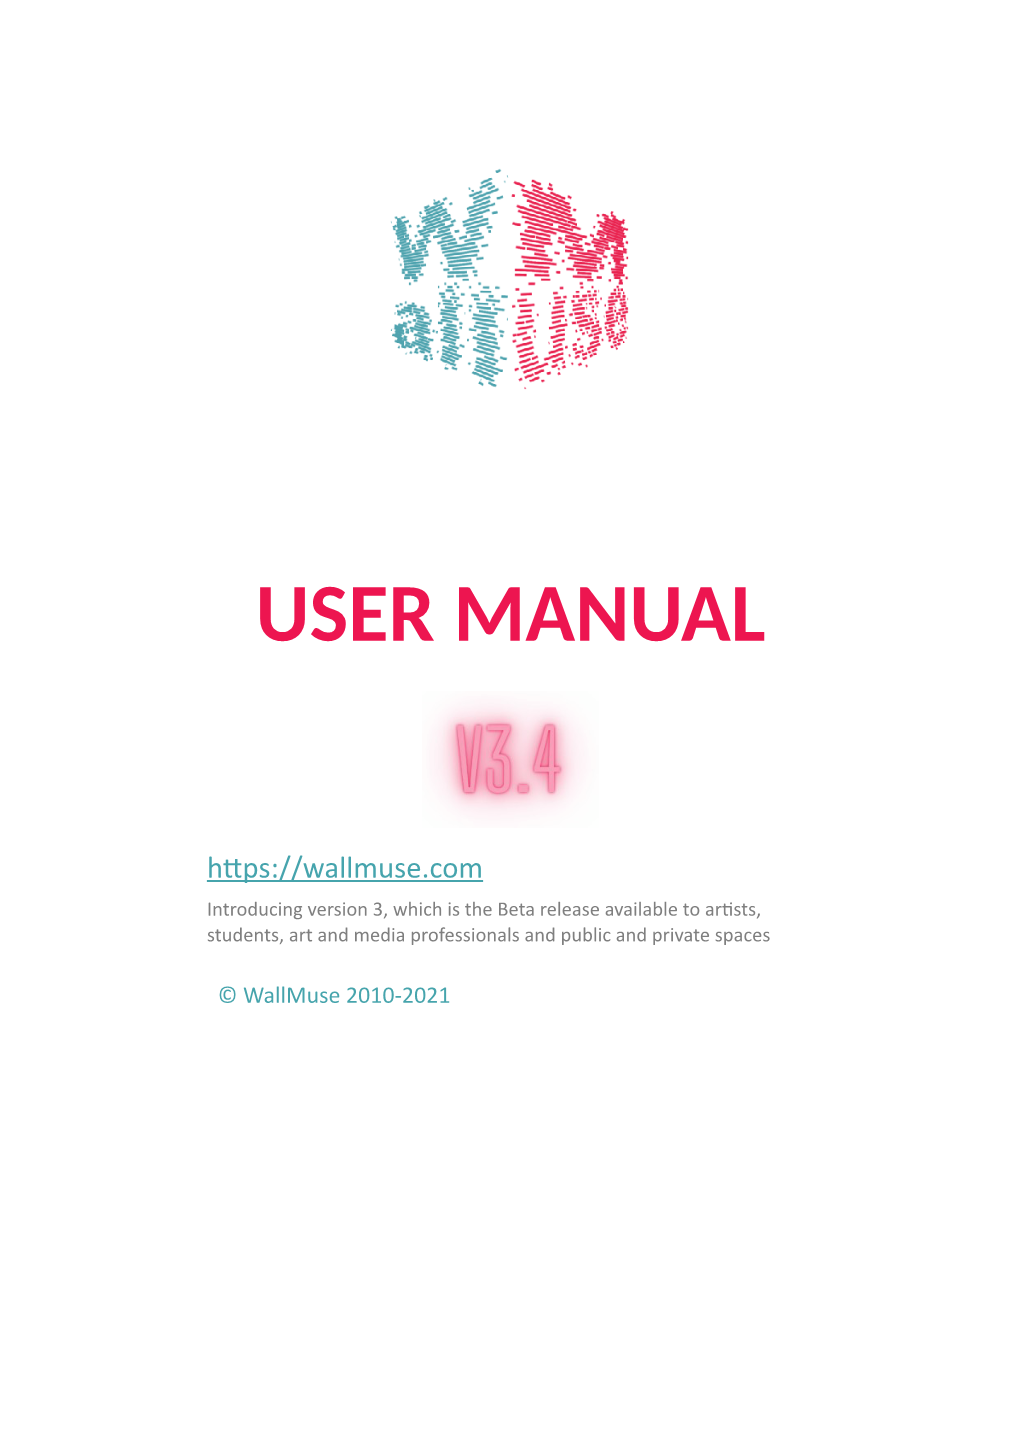 User Manual V3.4